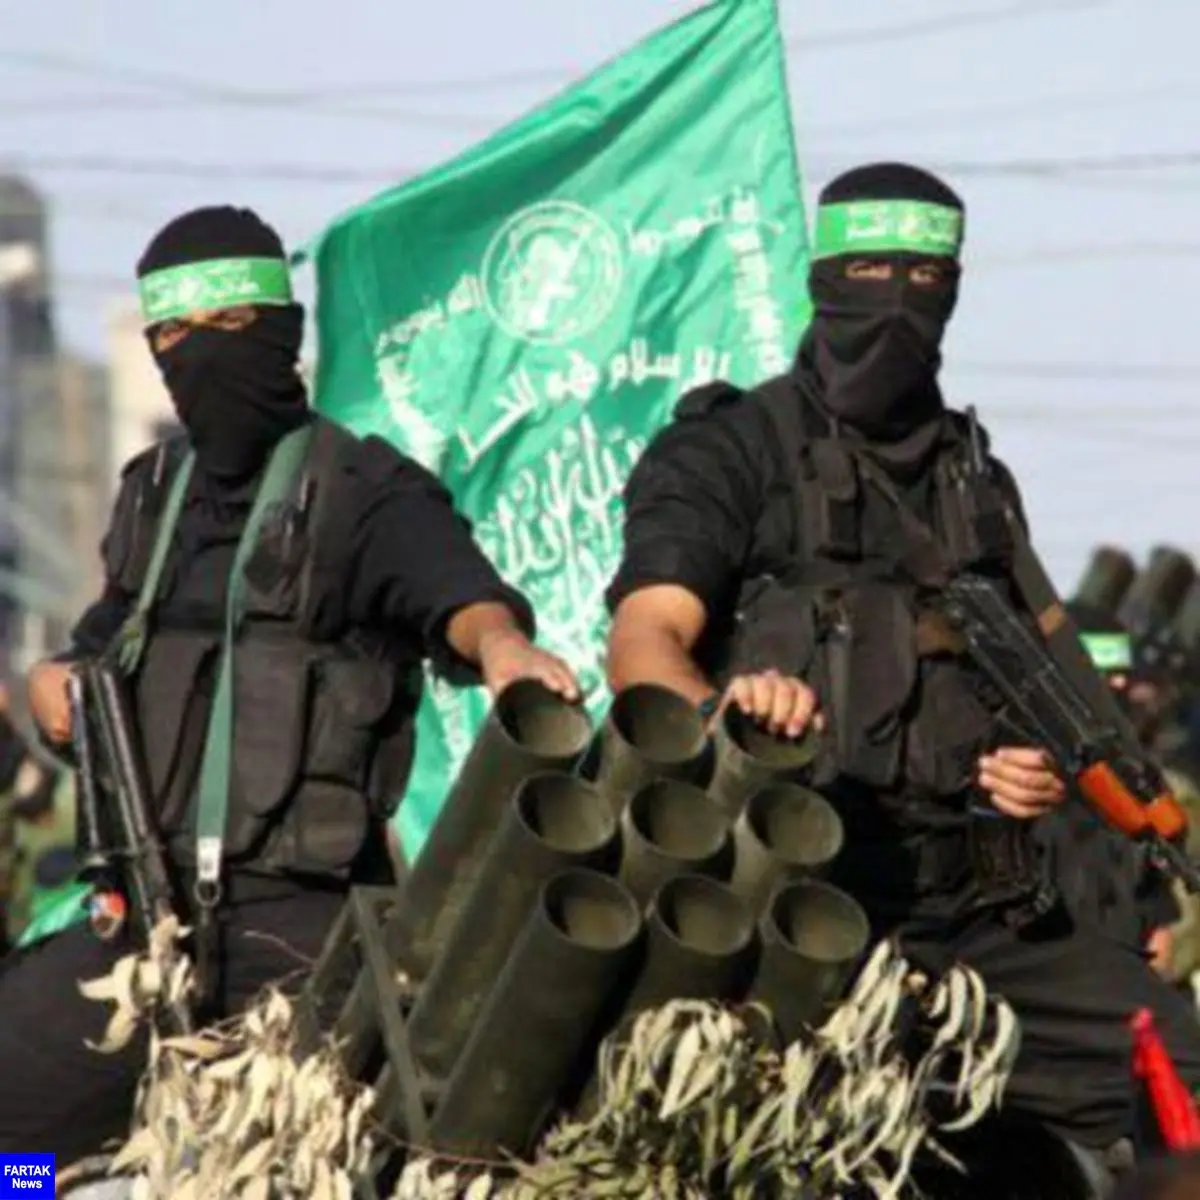 لیست بلندبالای رژیم صهیونیستی از اسامی رهبران حماس که در معرض ترور هستند